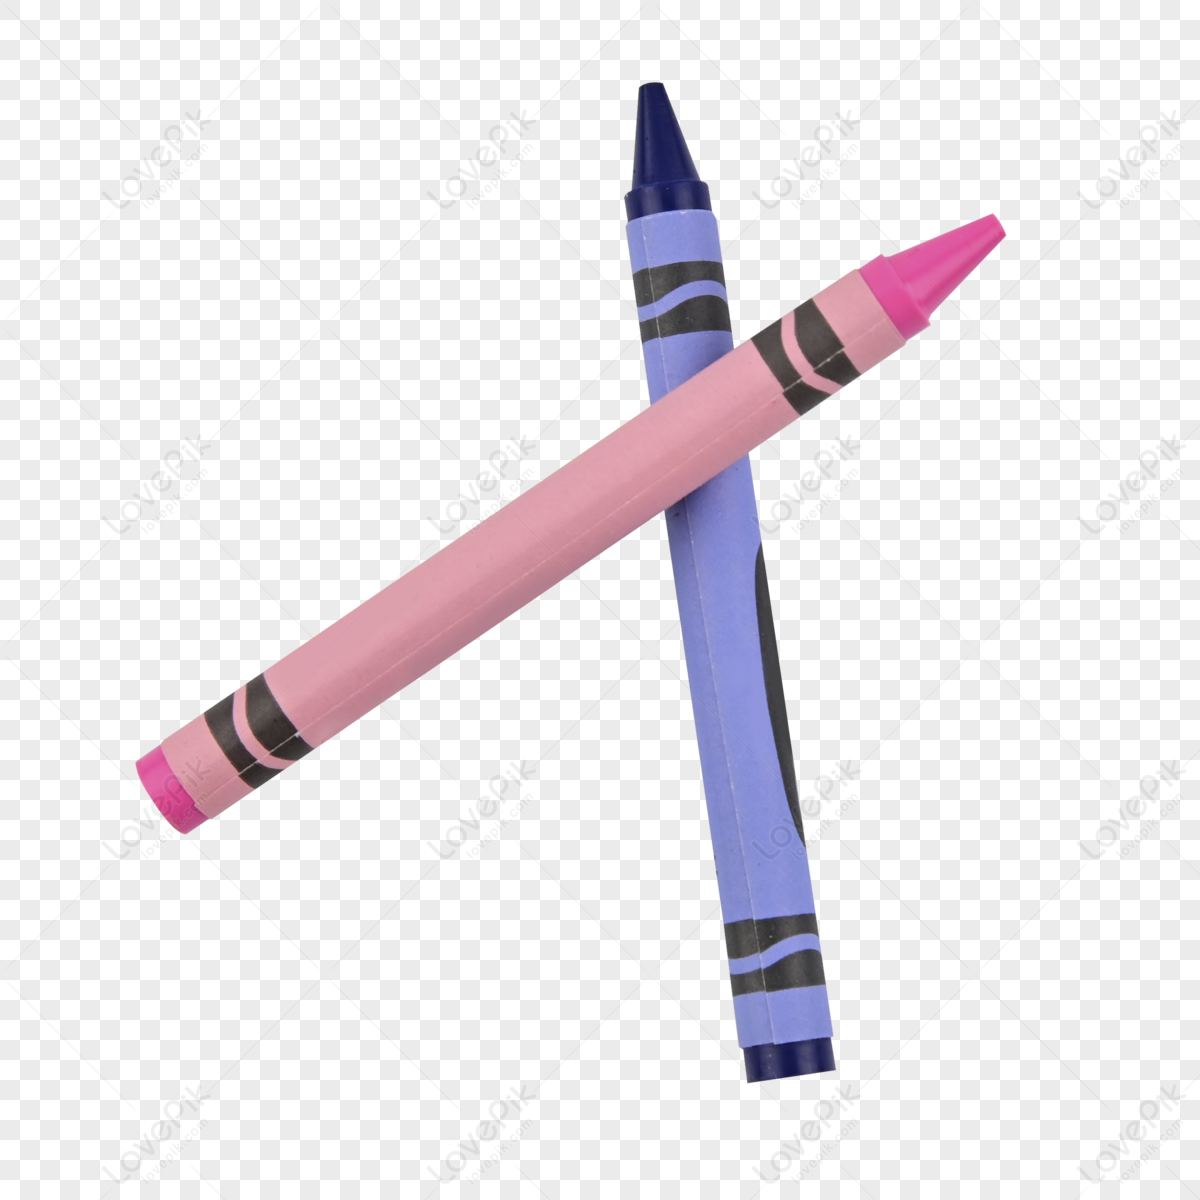 Pink Crayons And Purple Crayons, Crayon, Brush, Art PNG